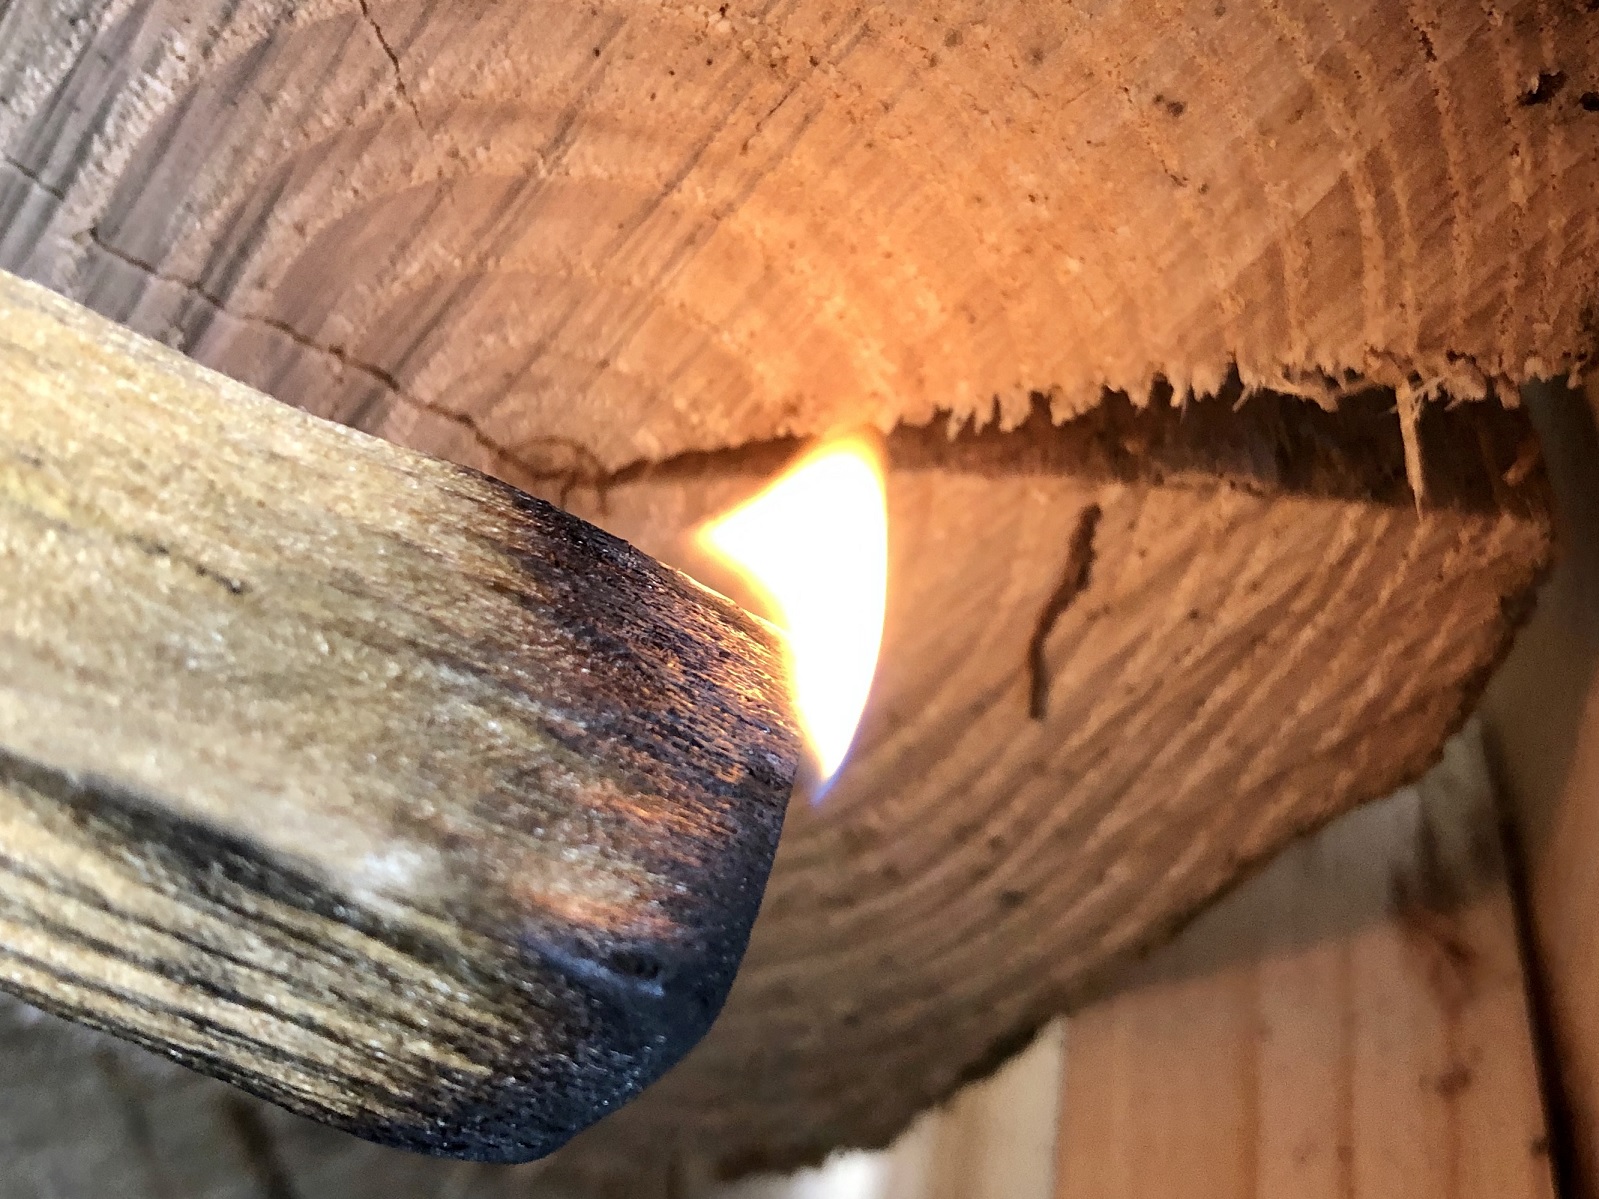 Räucherwissen - Kräuter und Holz direkt verglimmen